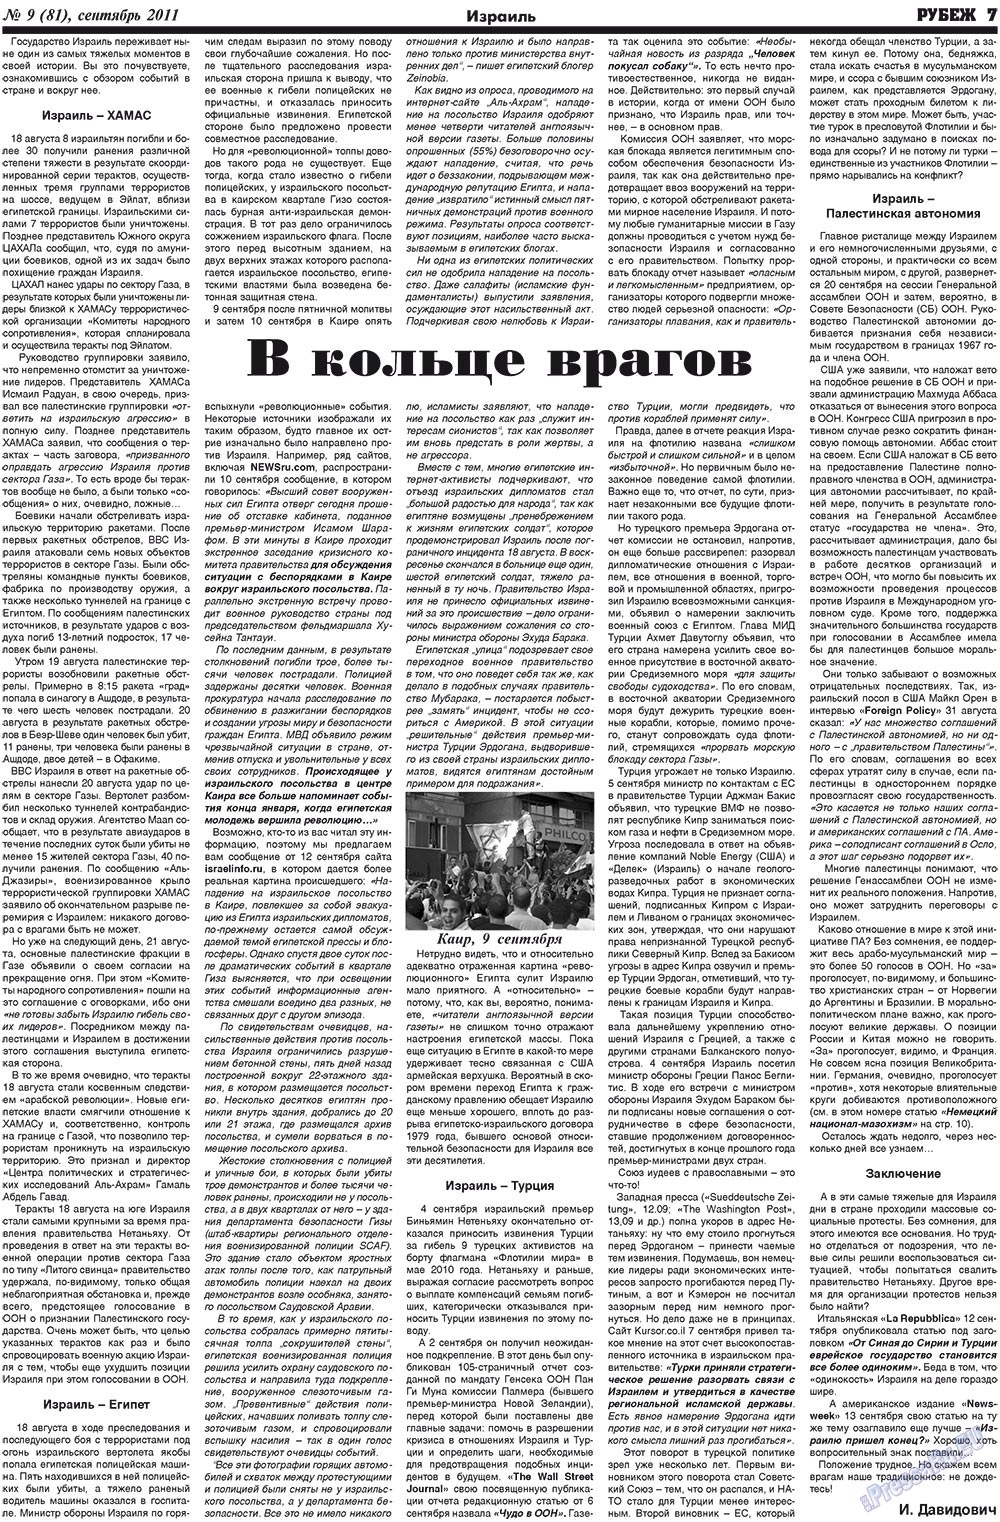 Рубеж (газета). 2011 год, номер 9, стр. 7